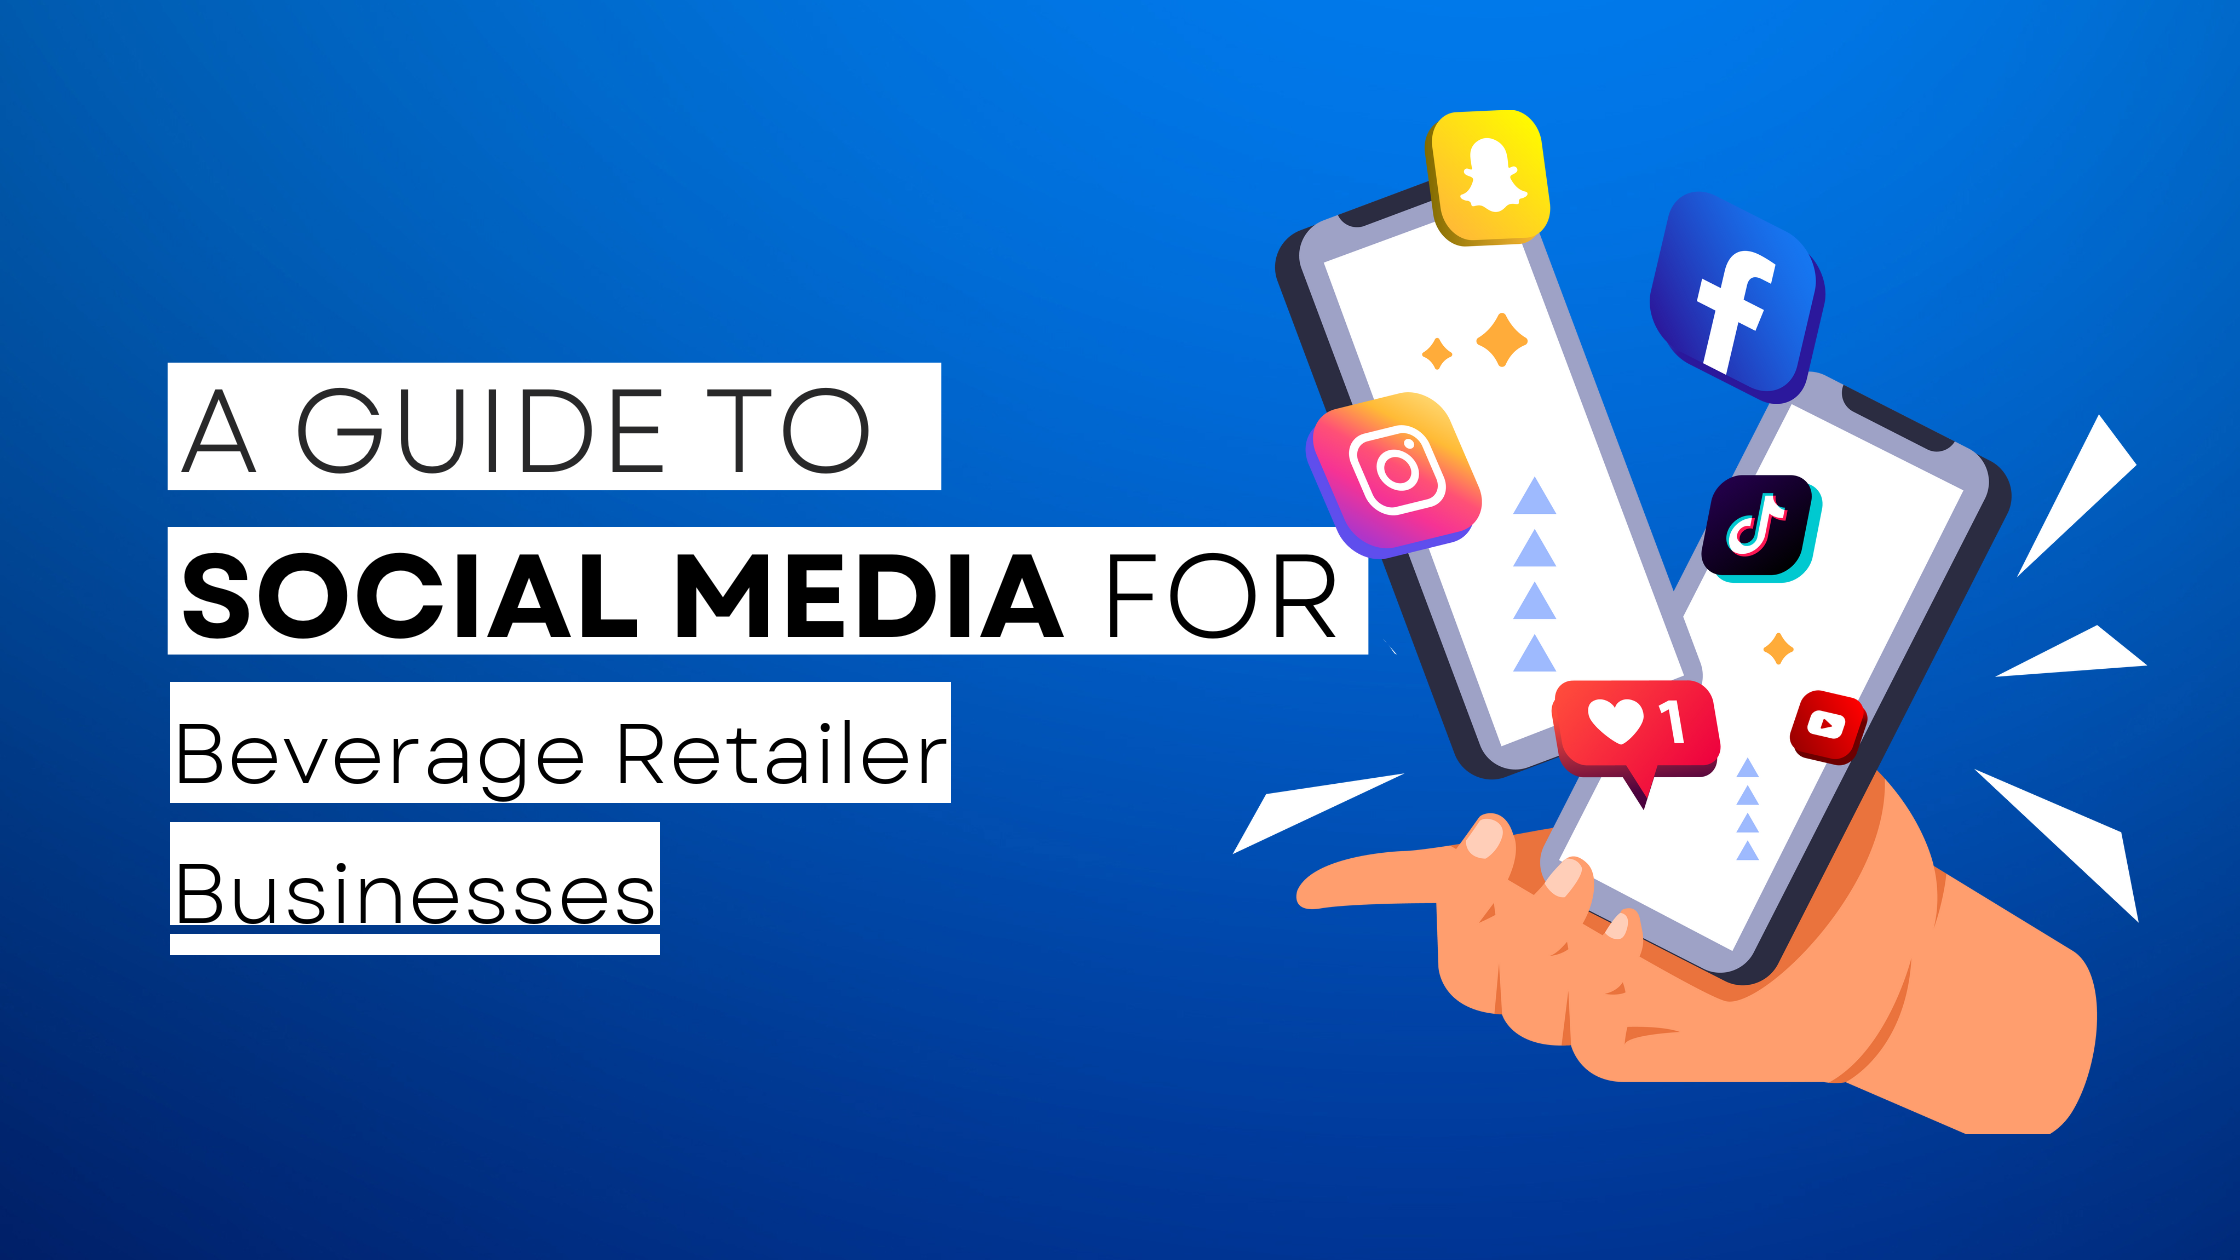 How to start Beverage Retailer on social media